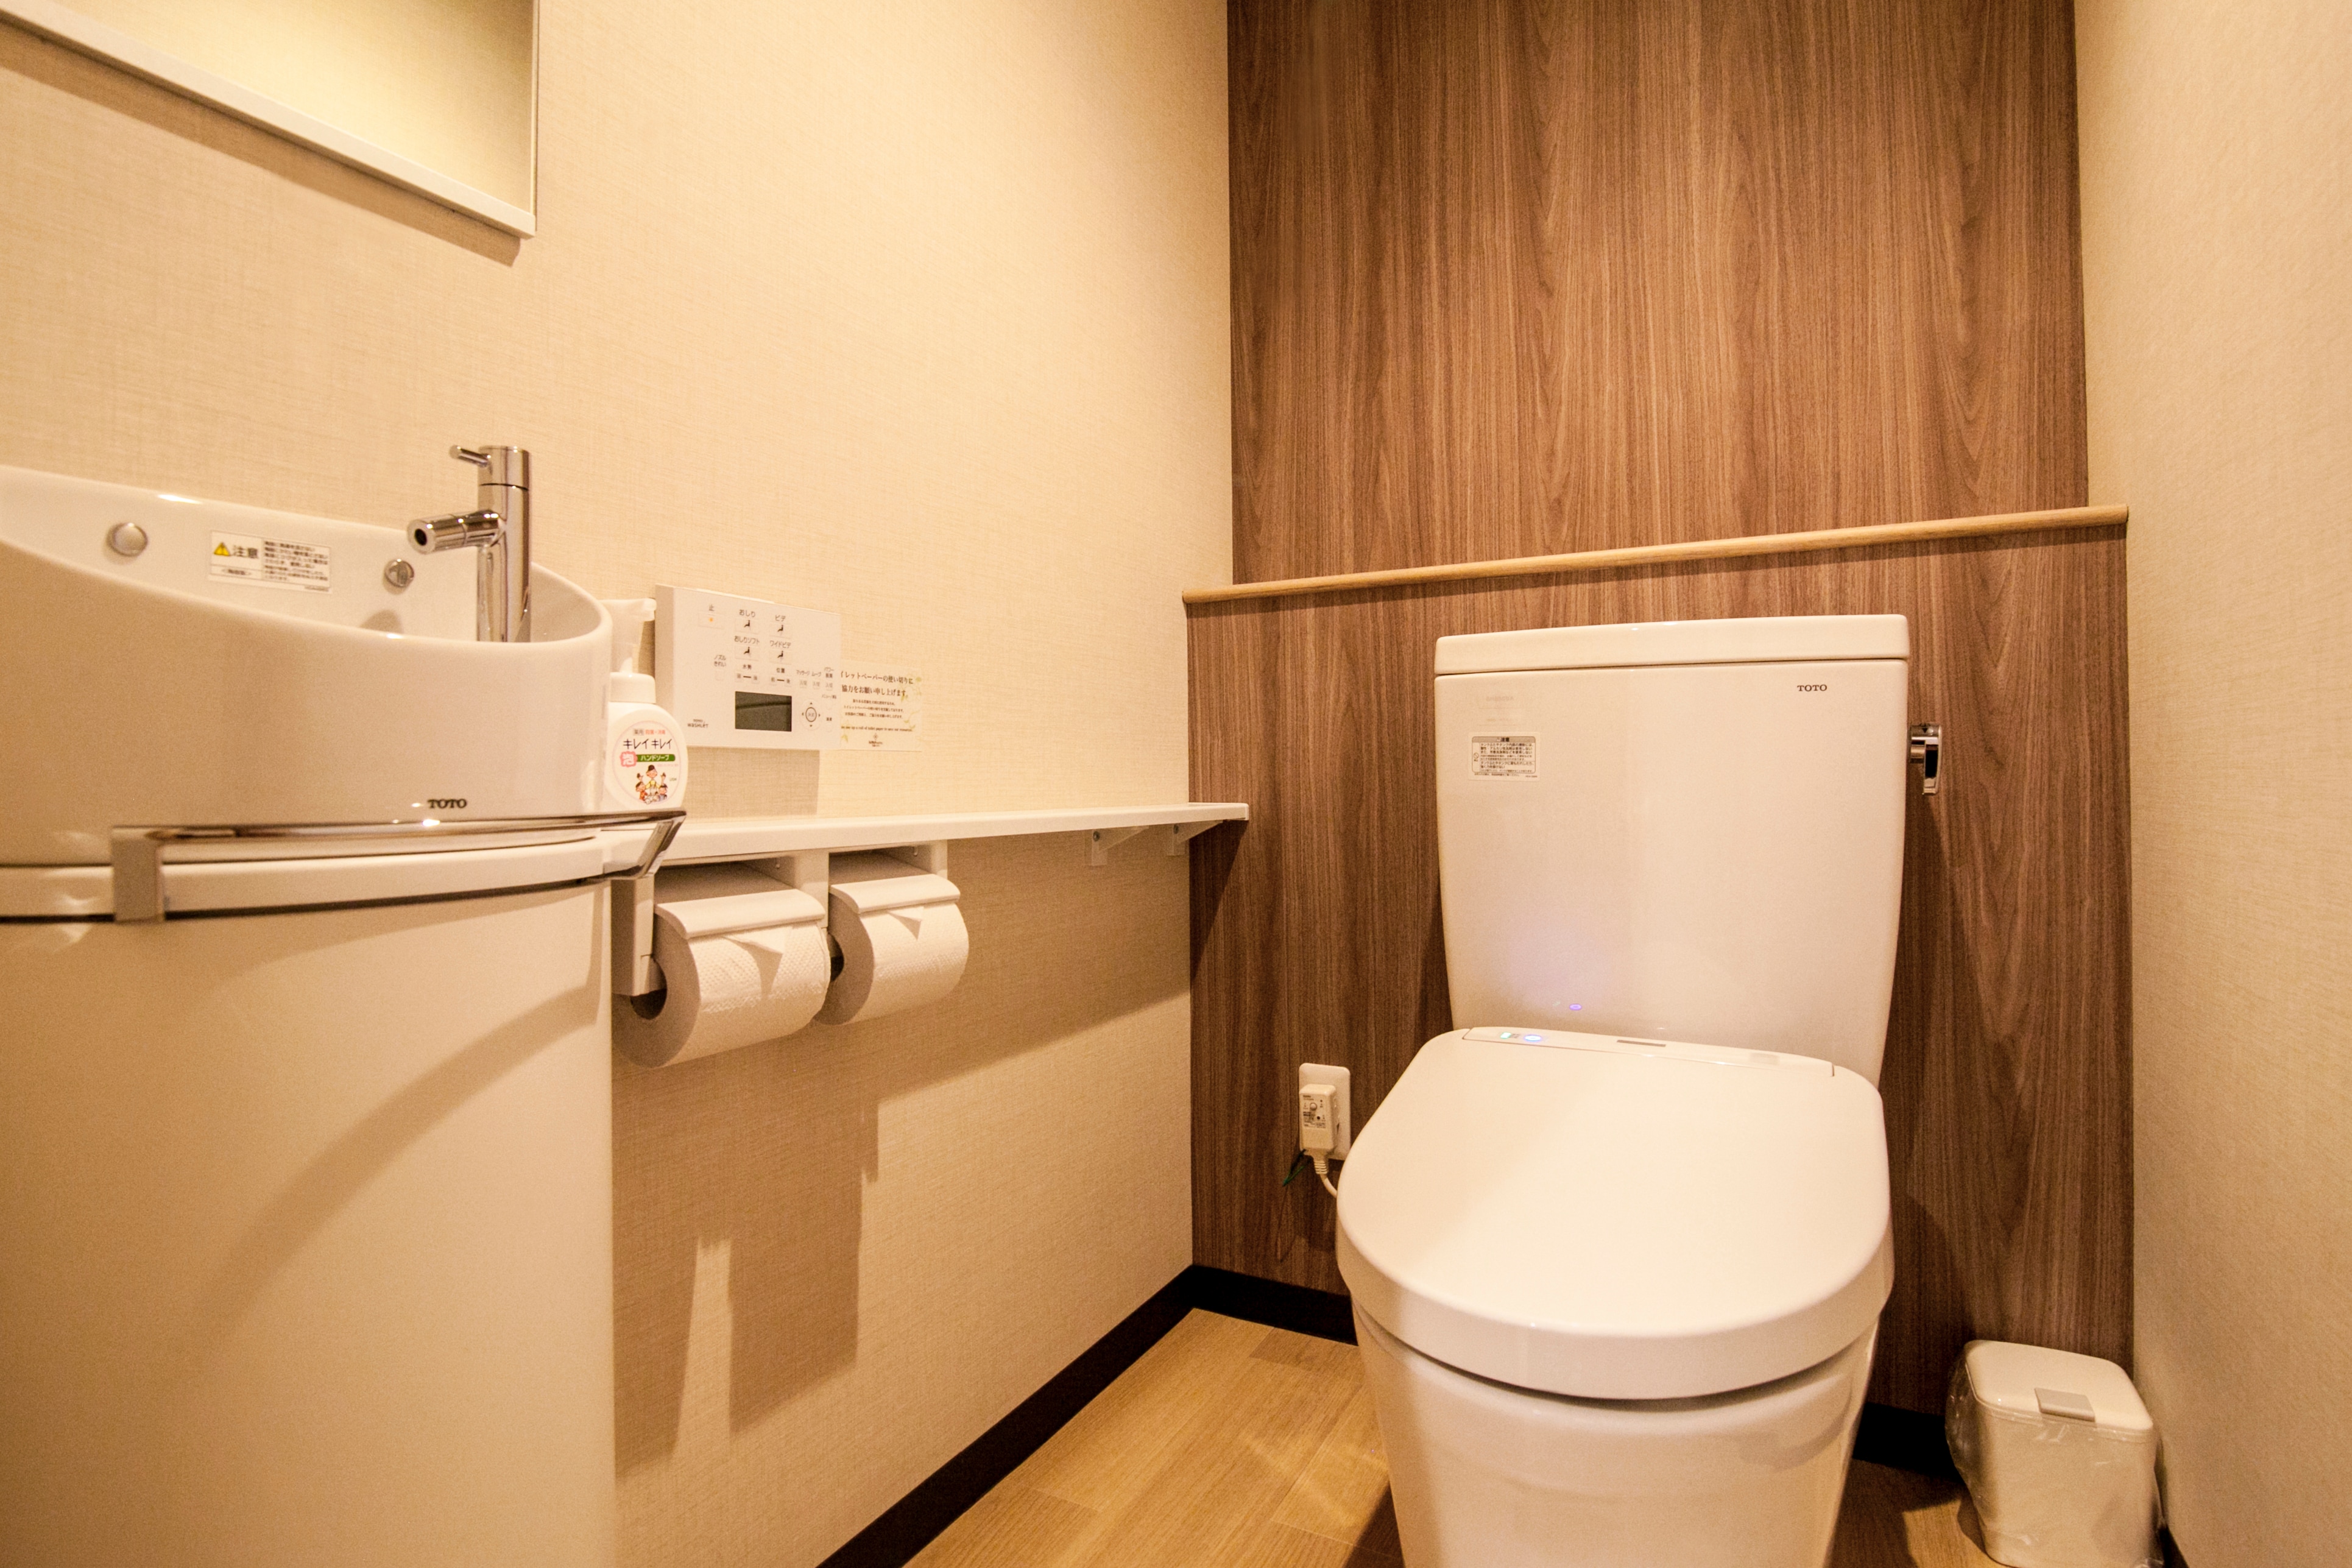 Kamar standar Jepang dan Barat (toilet)